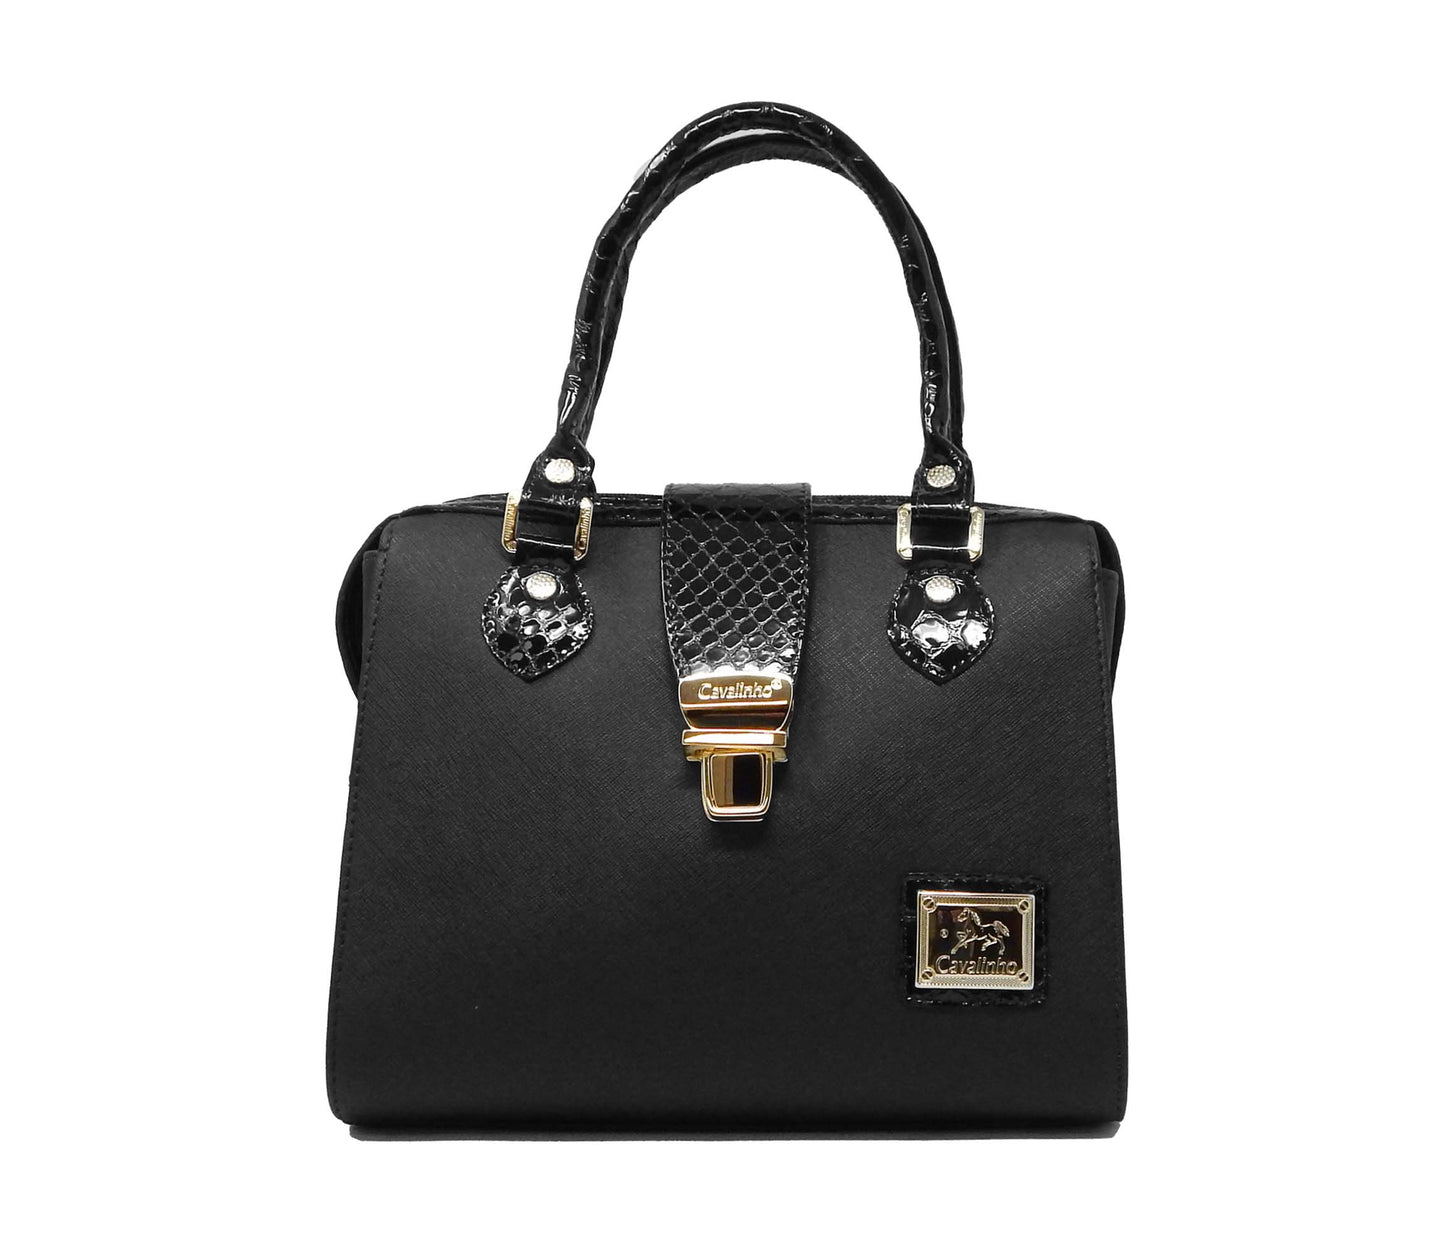 #color_ Black | Cavalinho Cherry Blossom Handbag - Black - 18810502.01.99_1